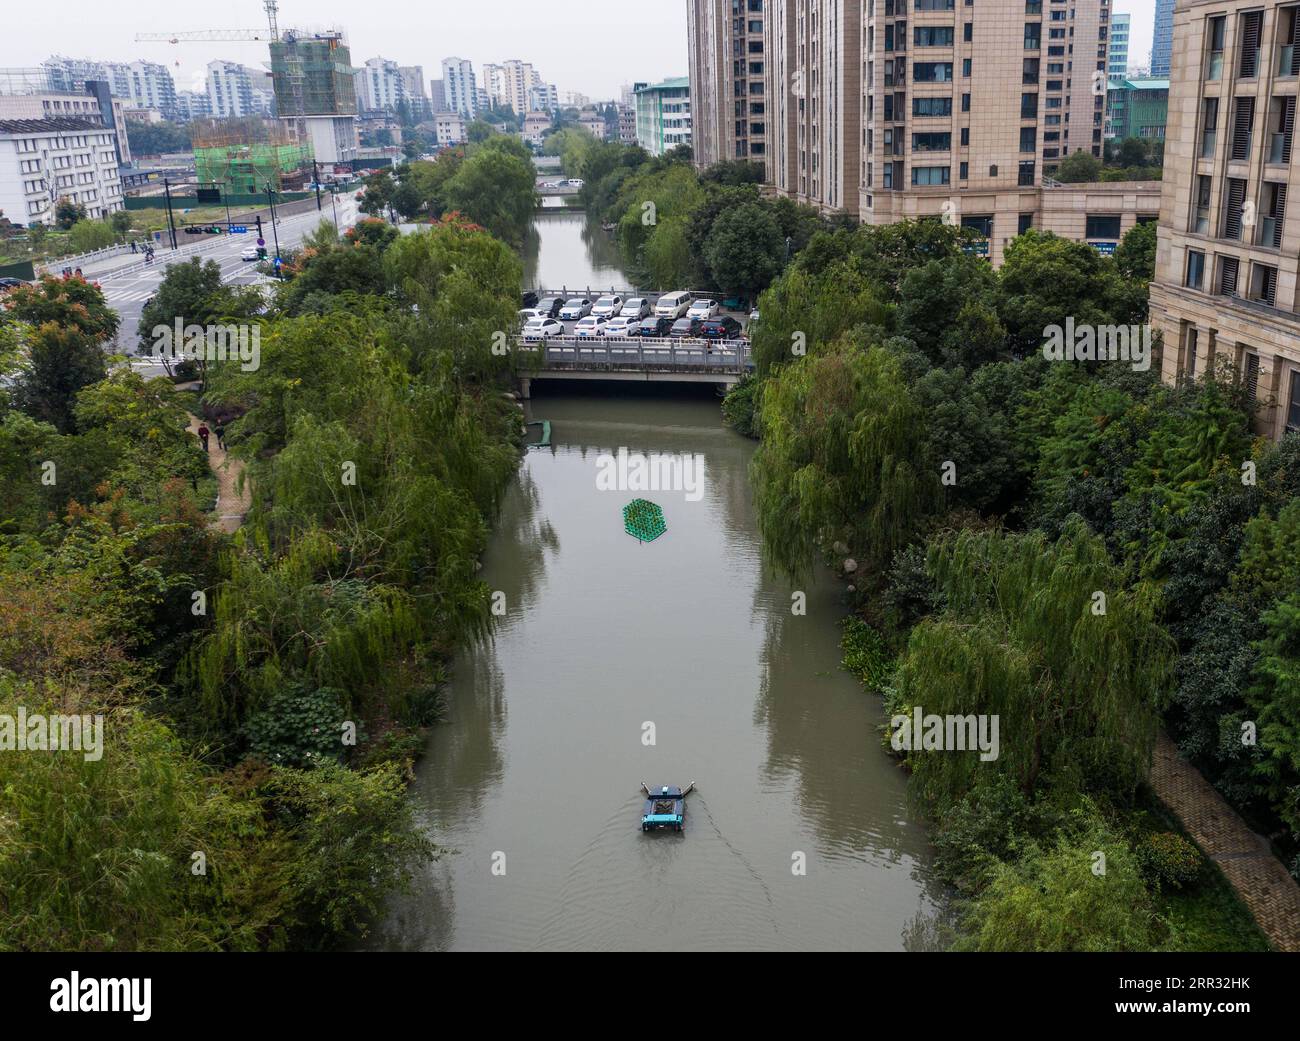 201021 -- HANGZHOU, 21. Oktober 2020 -- Luftaufnahme aufgenommen am 21. Oktober 2020 zeigt eine unbemannte Patrouillenmaschine und Müllsammelmaschine, die in einem Fluss in Hangzhou, der ostchinesischen Provinz Zhejiang, arbeitet. Eine Reihe von Hightech-Maßnahmen wurden zur Verbesserung des Flussökosystems in Hangzhou durchgeführt, einschließlich unbemannter Boote, die patrouillieren, automatisches Abfallreinigungssystem für Wasserläufe, KI-Überwachungssystem mit künstlicher Intelligenz usw. CHINA-HANGZHOU-RIVER ECOSYSTEM-MANAGEMENT CN XUXYU PUBLICATIONXNOTXINXCHN Stockfoto